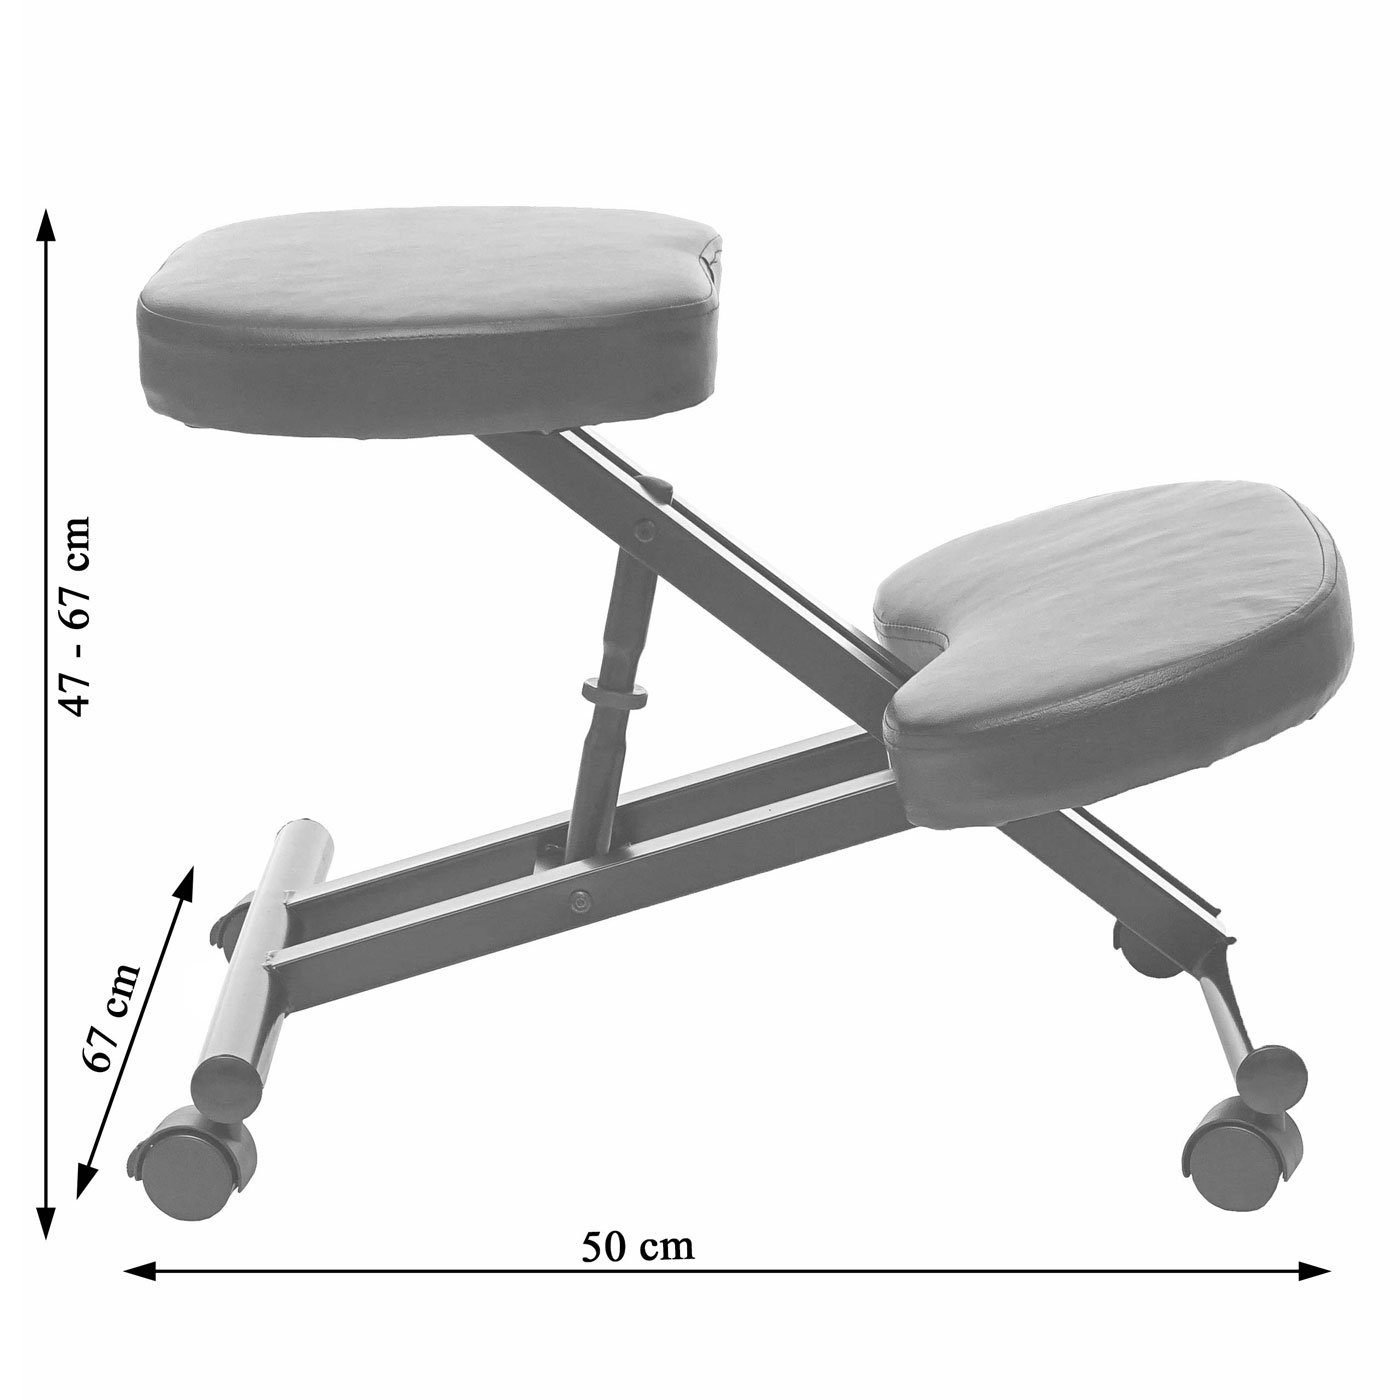 und gepolsterte MCW Sitzfläche, creme-beige Weich Knie- Schreibtischstuhl MCW-E10, Sitzfläche Höhenverstellbare